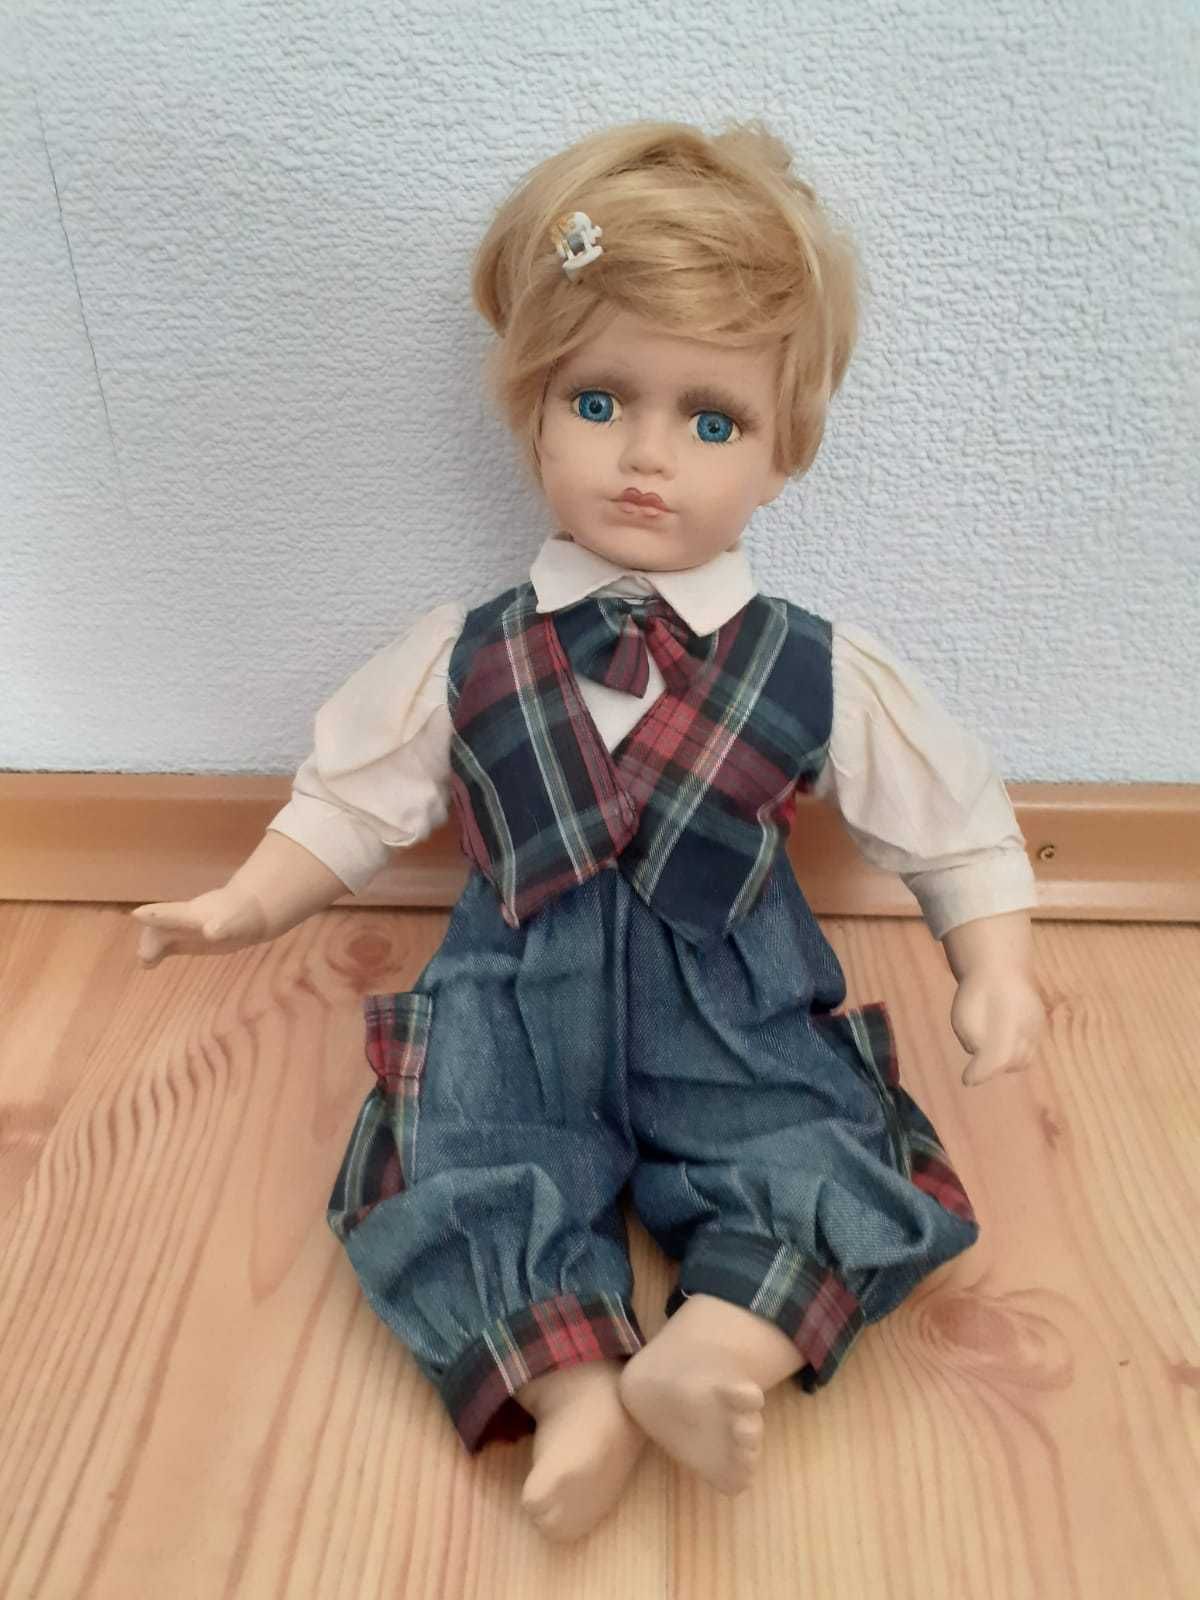 Kolekcjonerska lalka w pozycji siedzącej